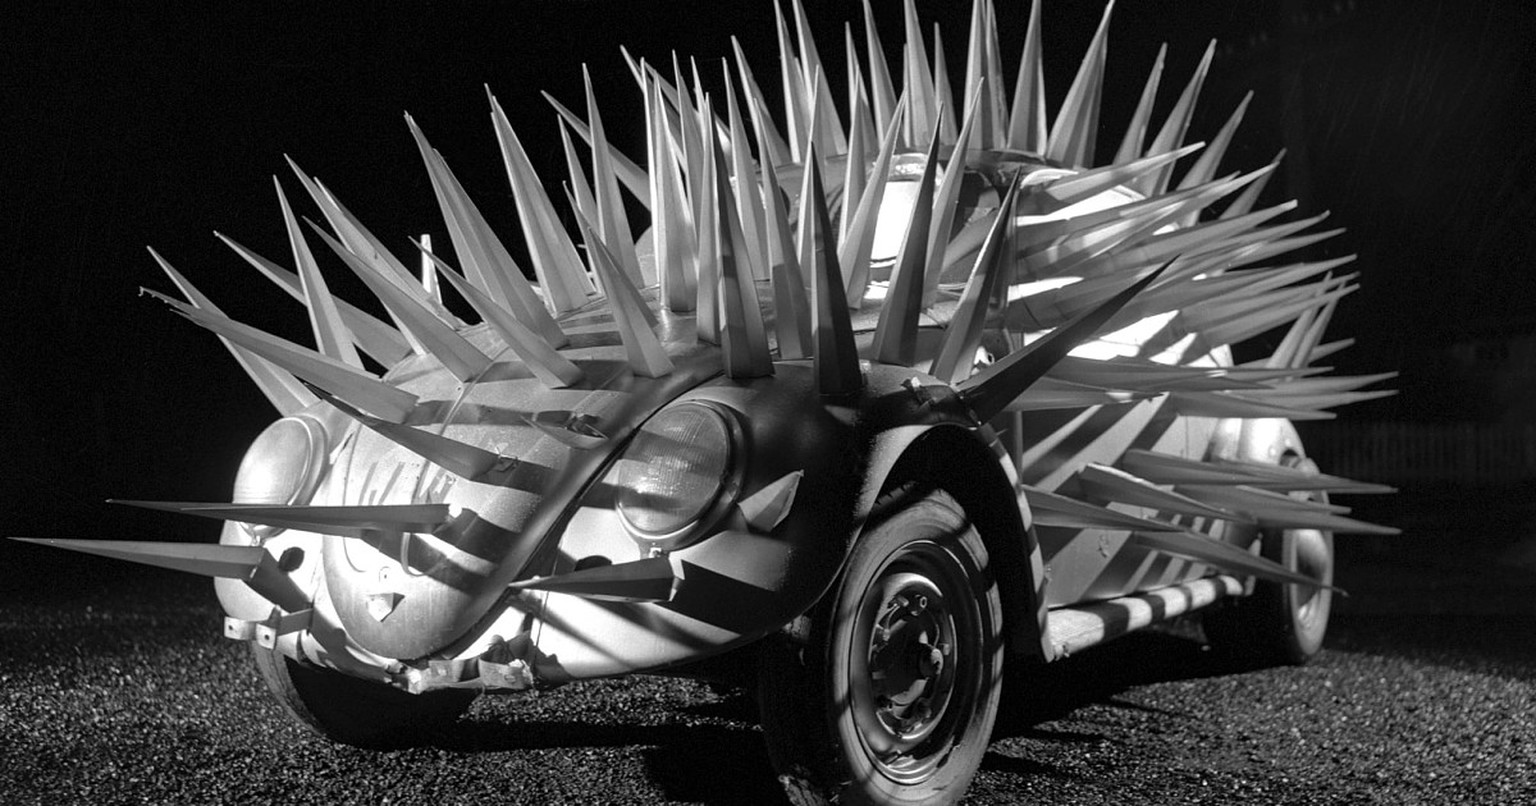 vw käfer the cars that ate paris 1974 australien horrorfilm movie auto motor b-movie retro https://4r.ru/stati/32131-beregis-avtomobilya-chem-mozhno-otpugnut-avtougonshchika-/